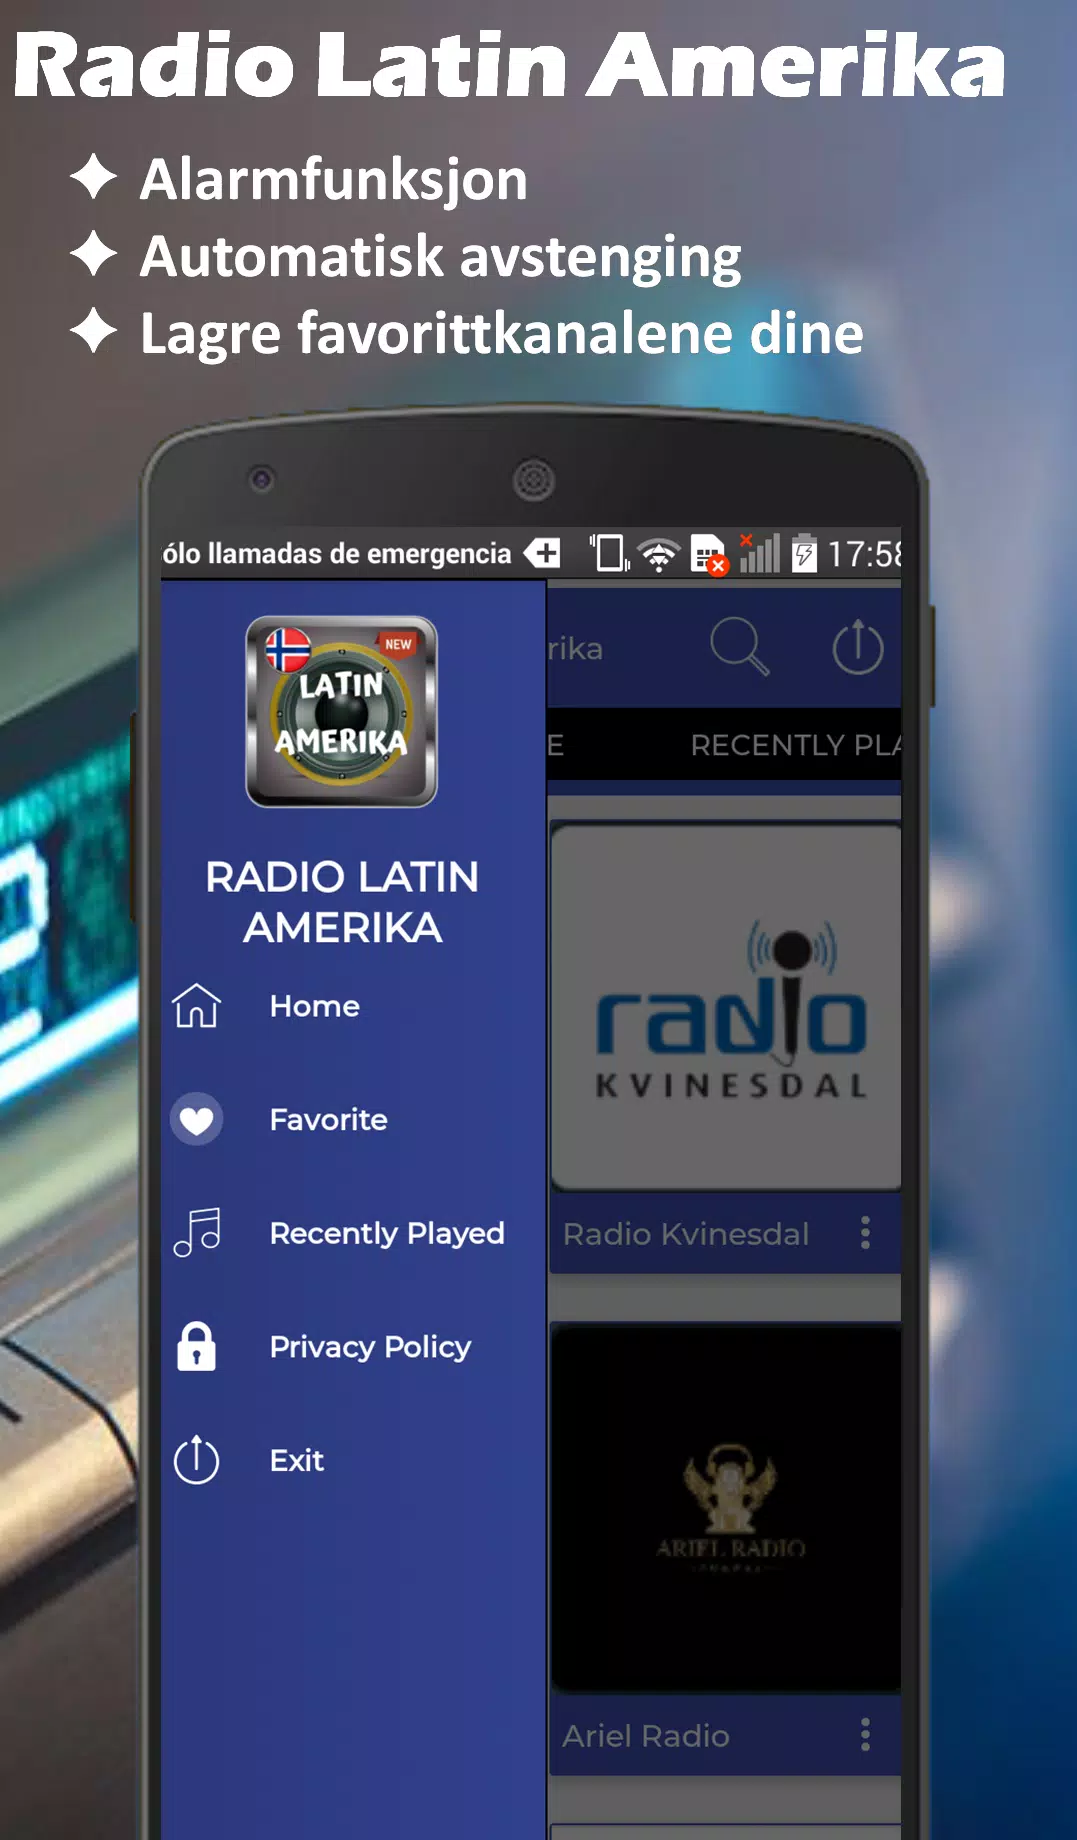 Radio Latin Amerika Oslo-Norge Radio Dab Nettradio APK للاندرويد تنزيل